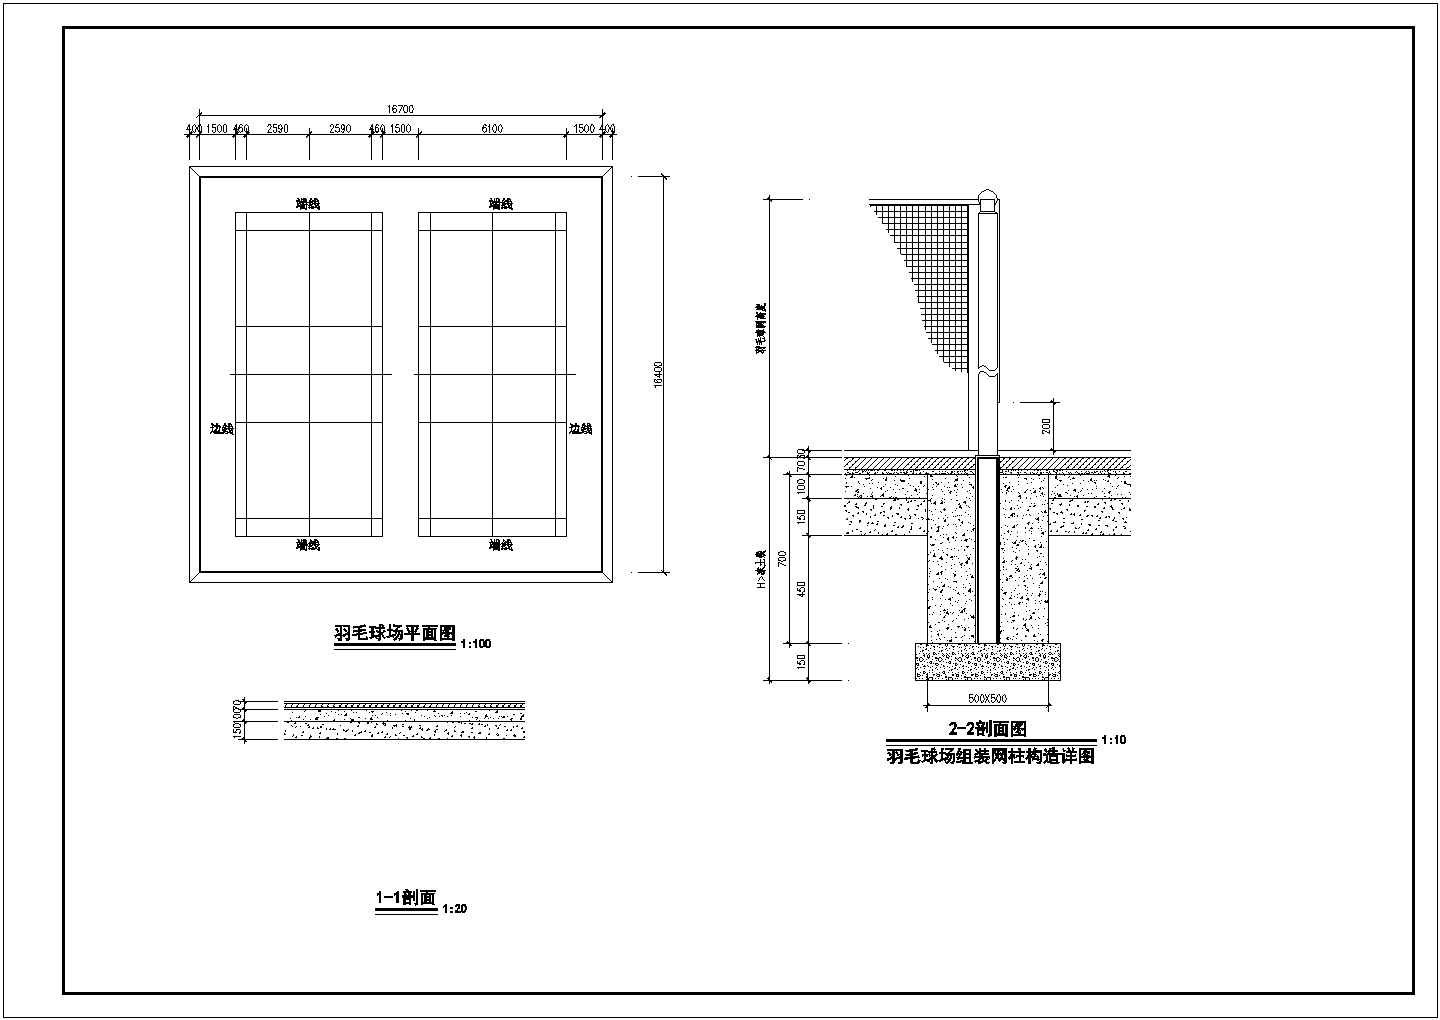 乐庆市福康花园北区小区景观工程施工图CAD图纸全套